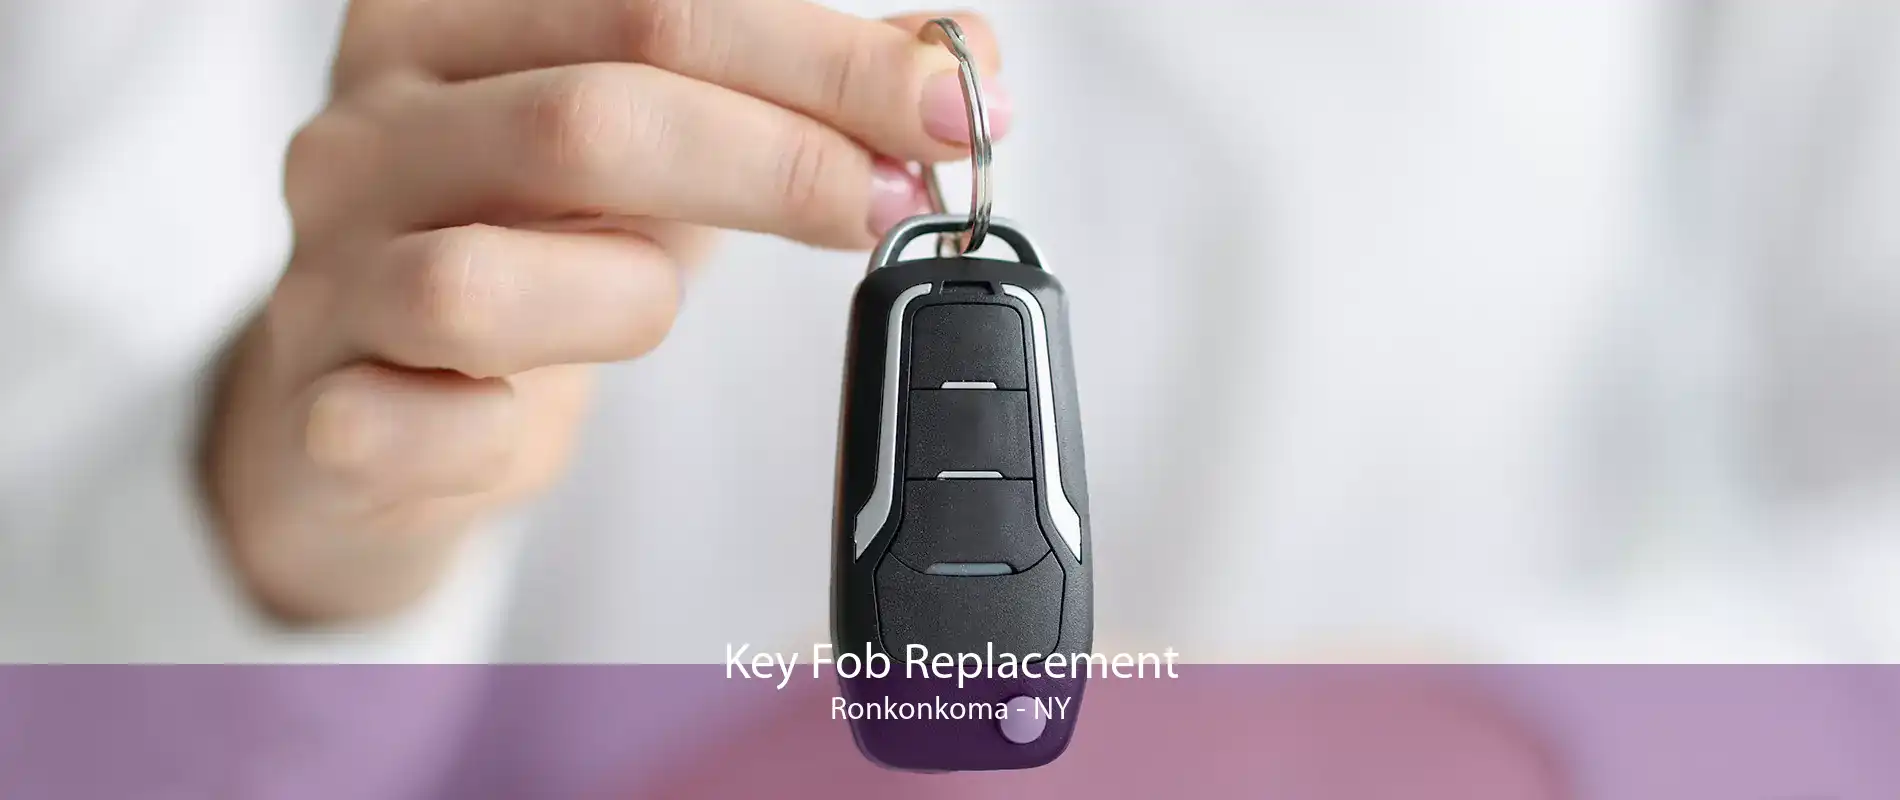 Key Fob Replacement Ronkonkoma - NY